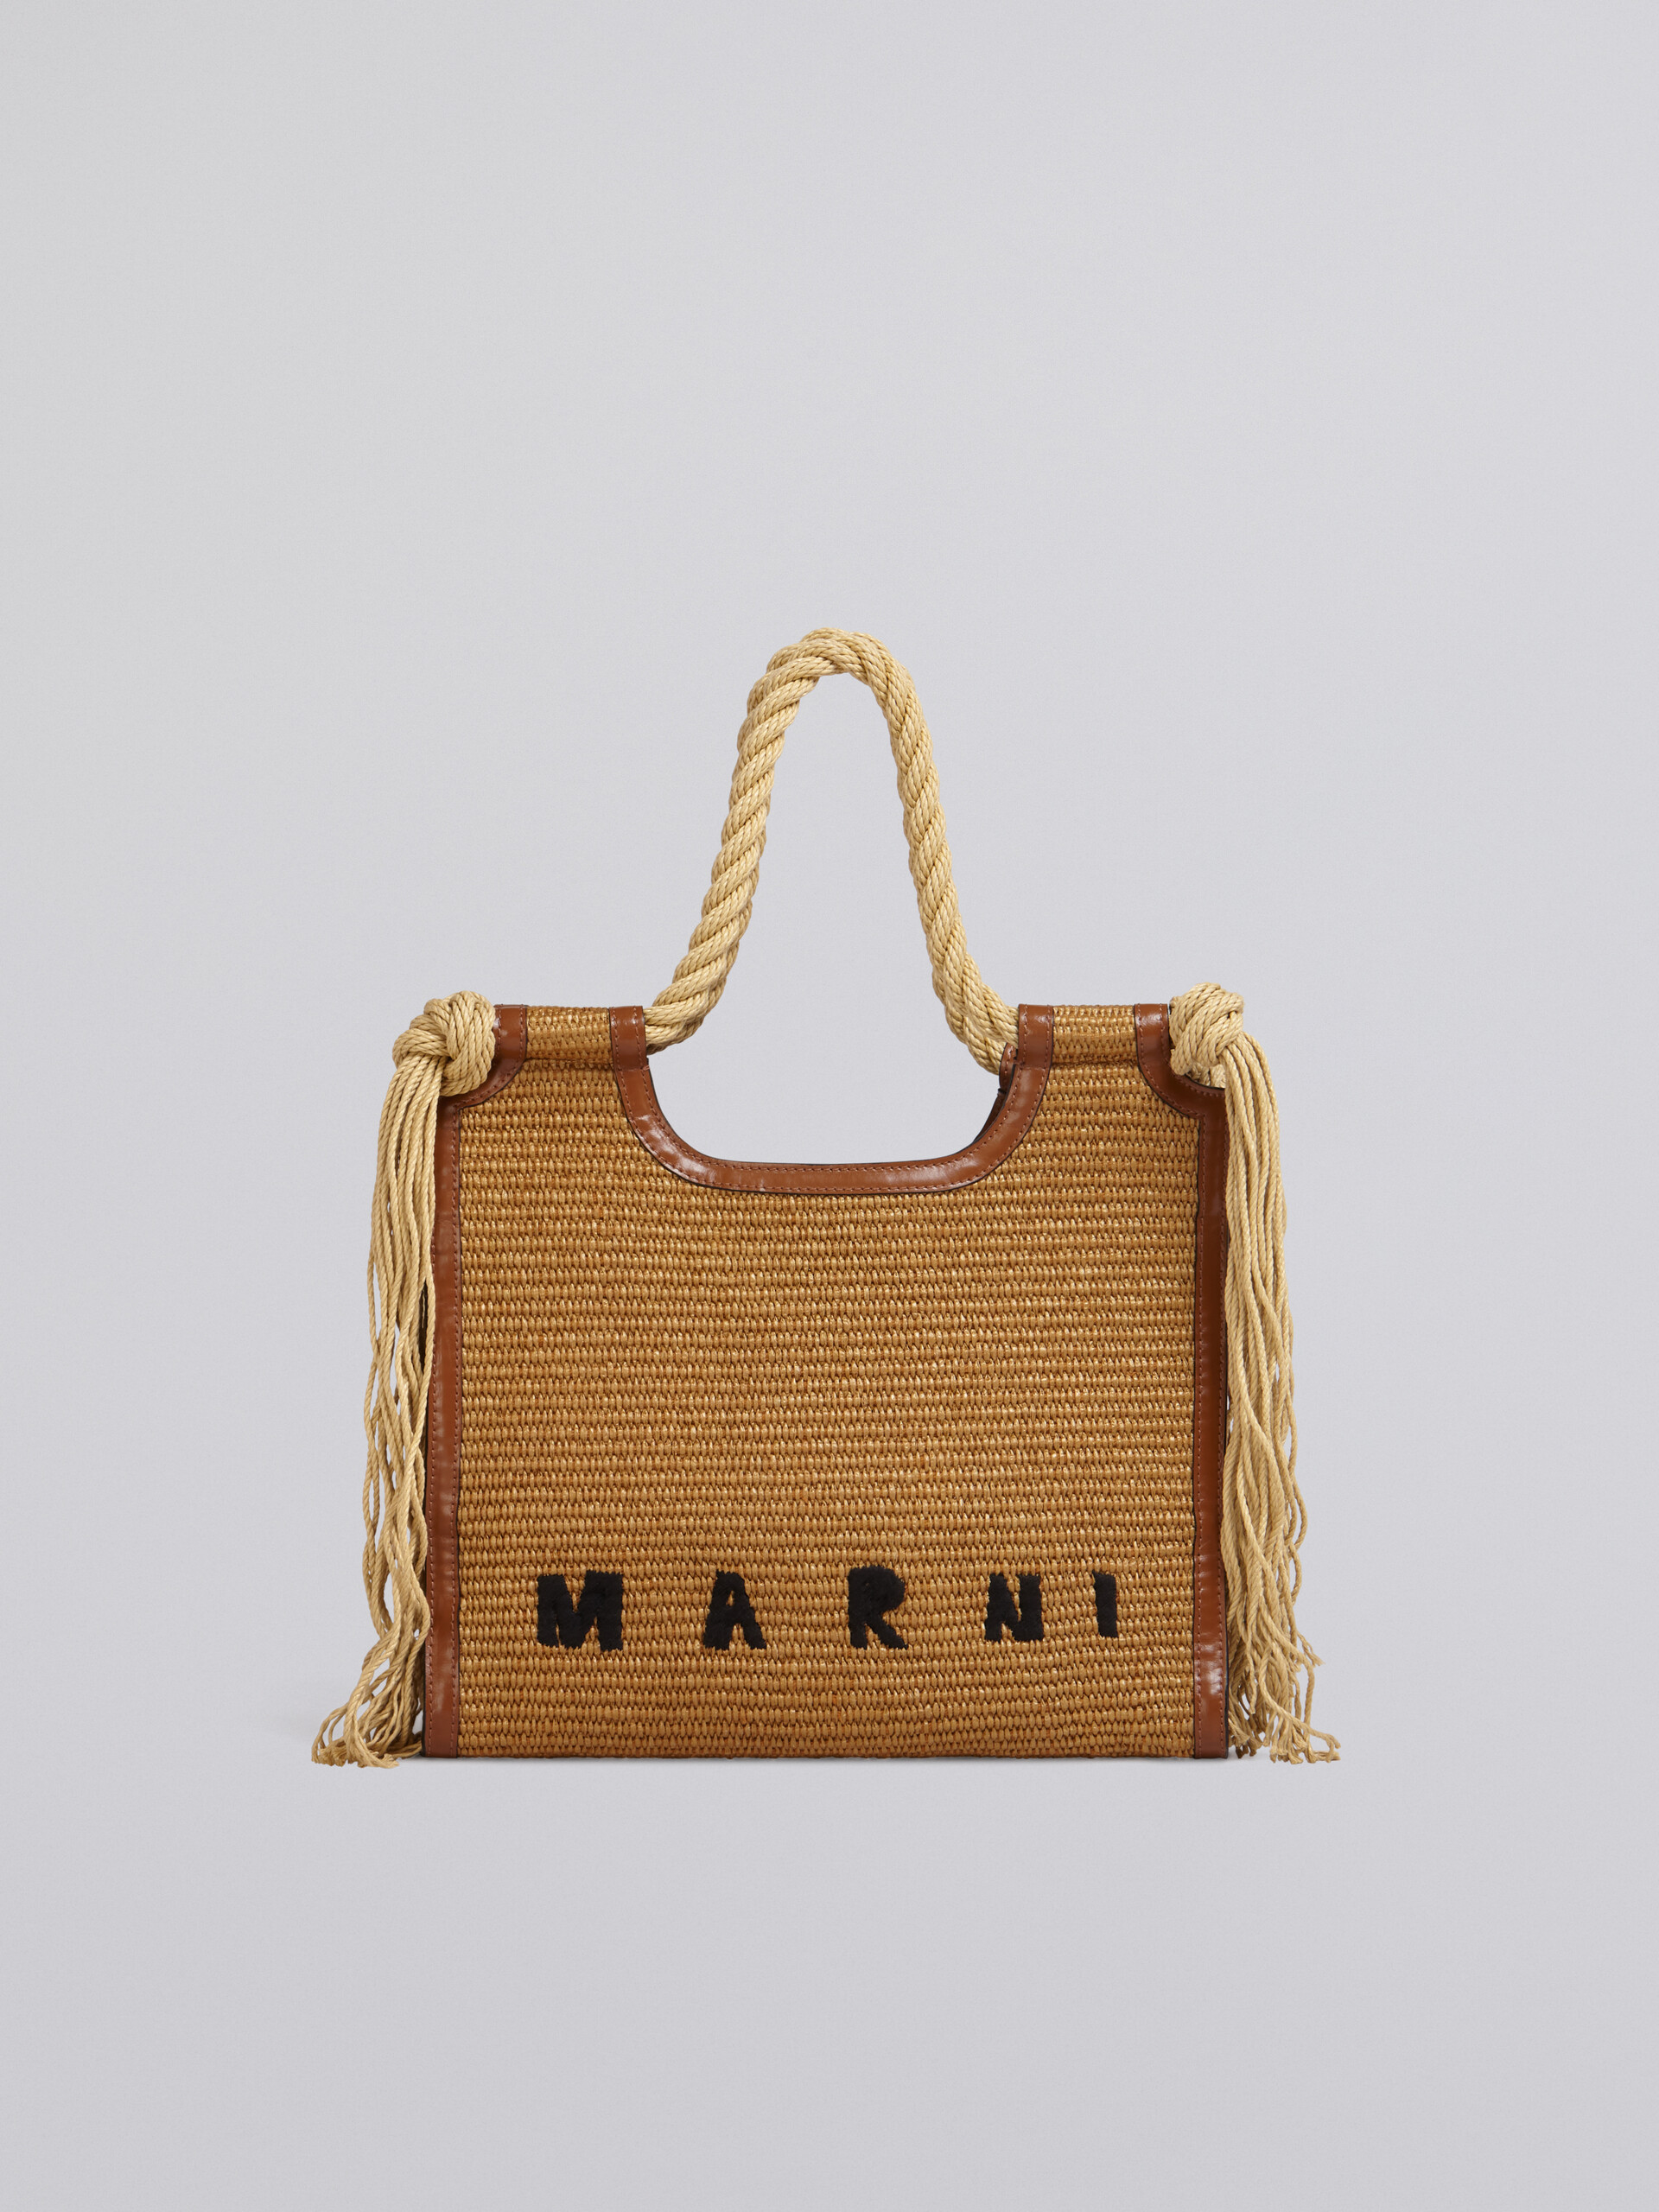 Tasche Marcel Summer mit Seilgriffen - Handtaschen - Image 1